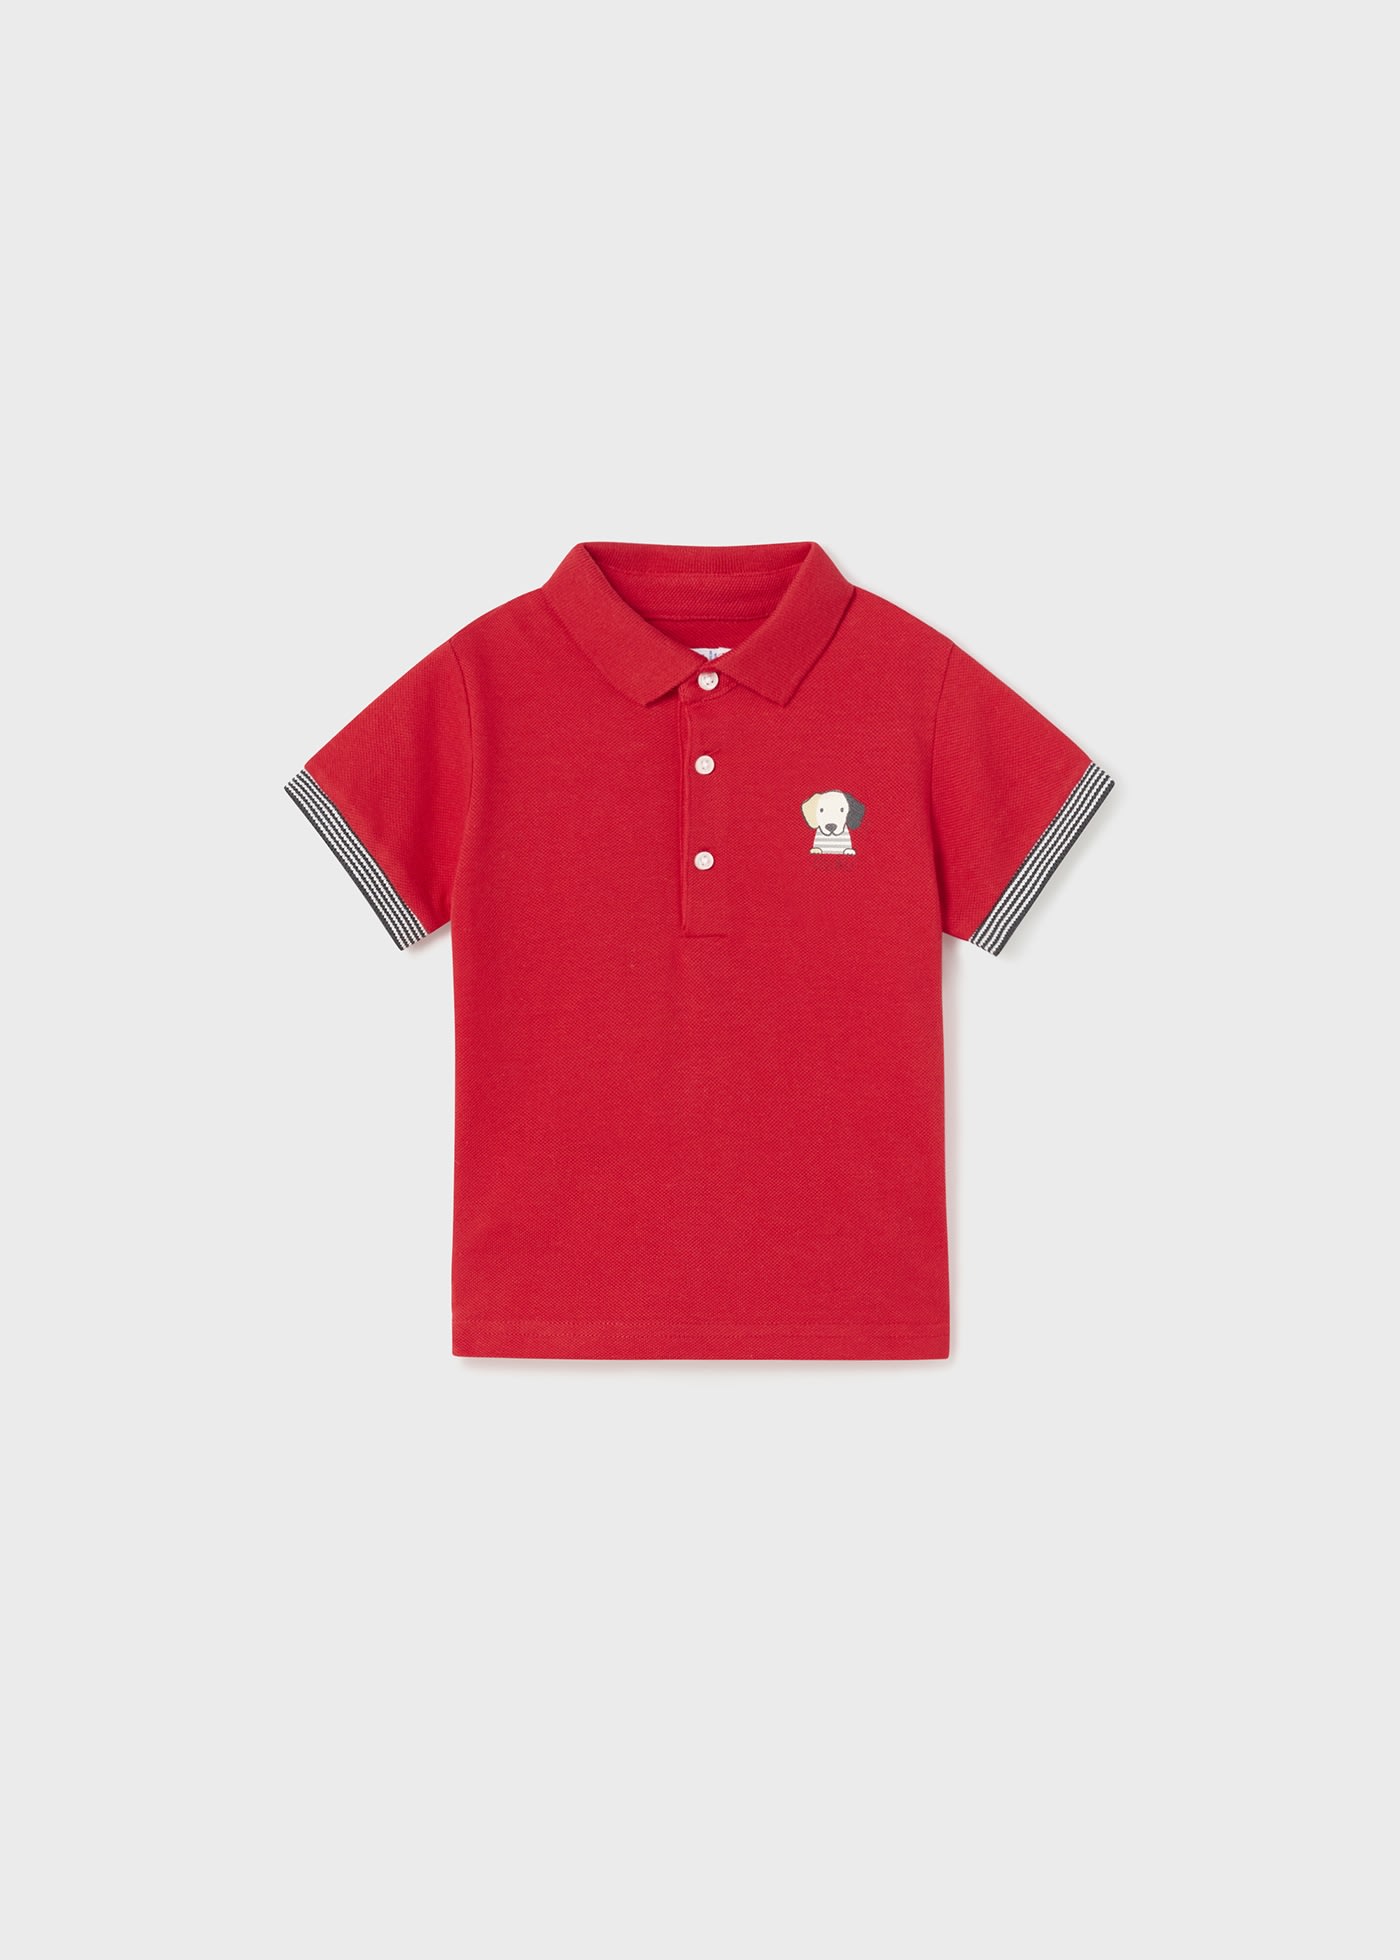 Print Polo shirt baby | ®